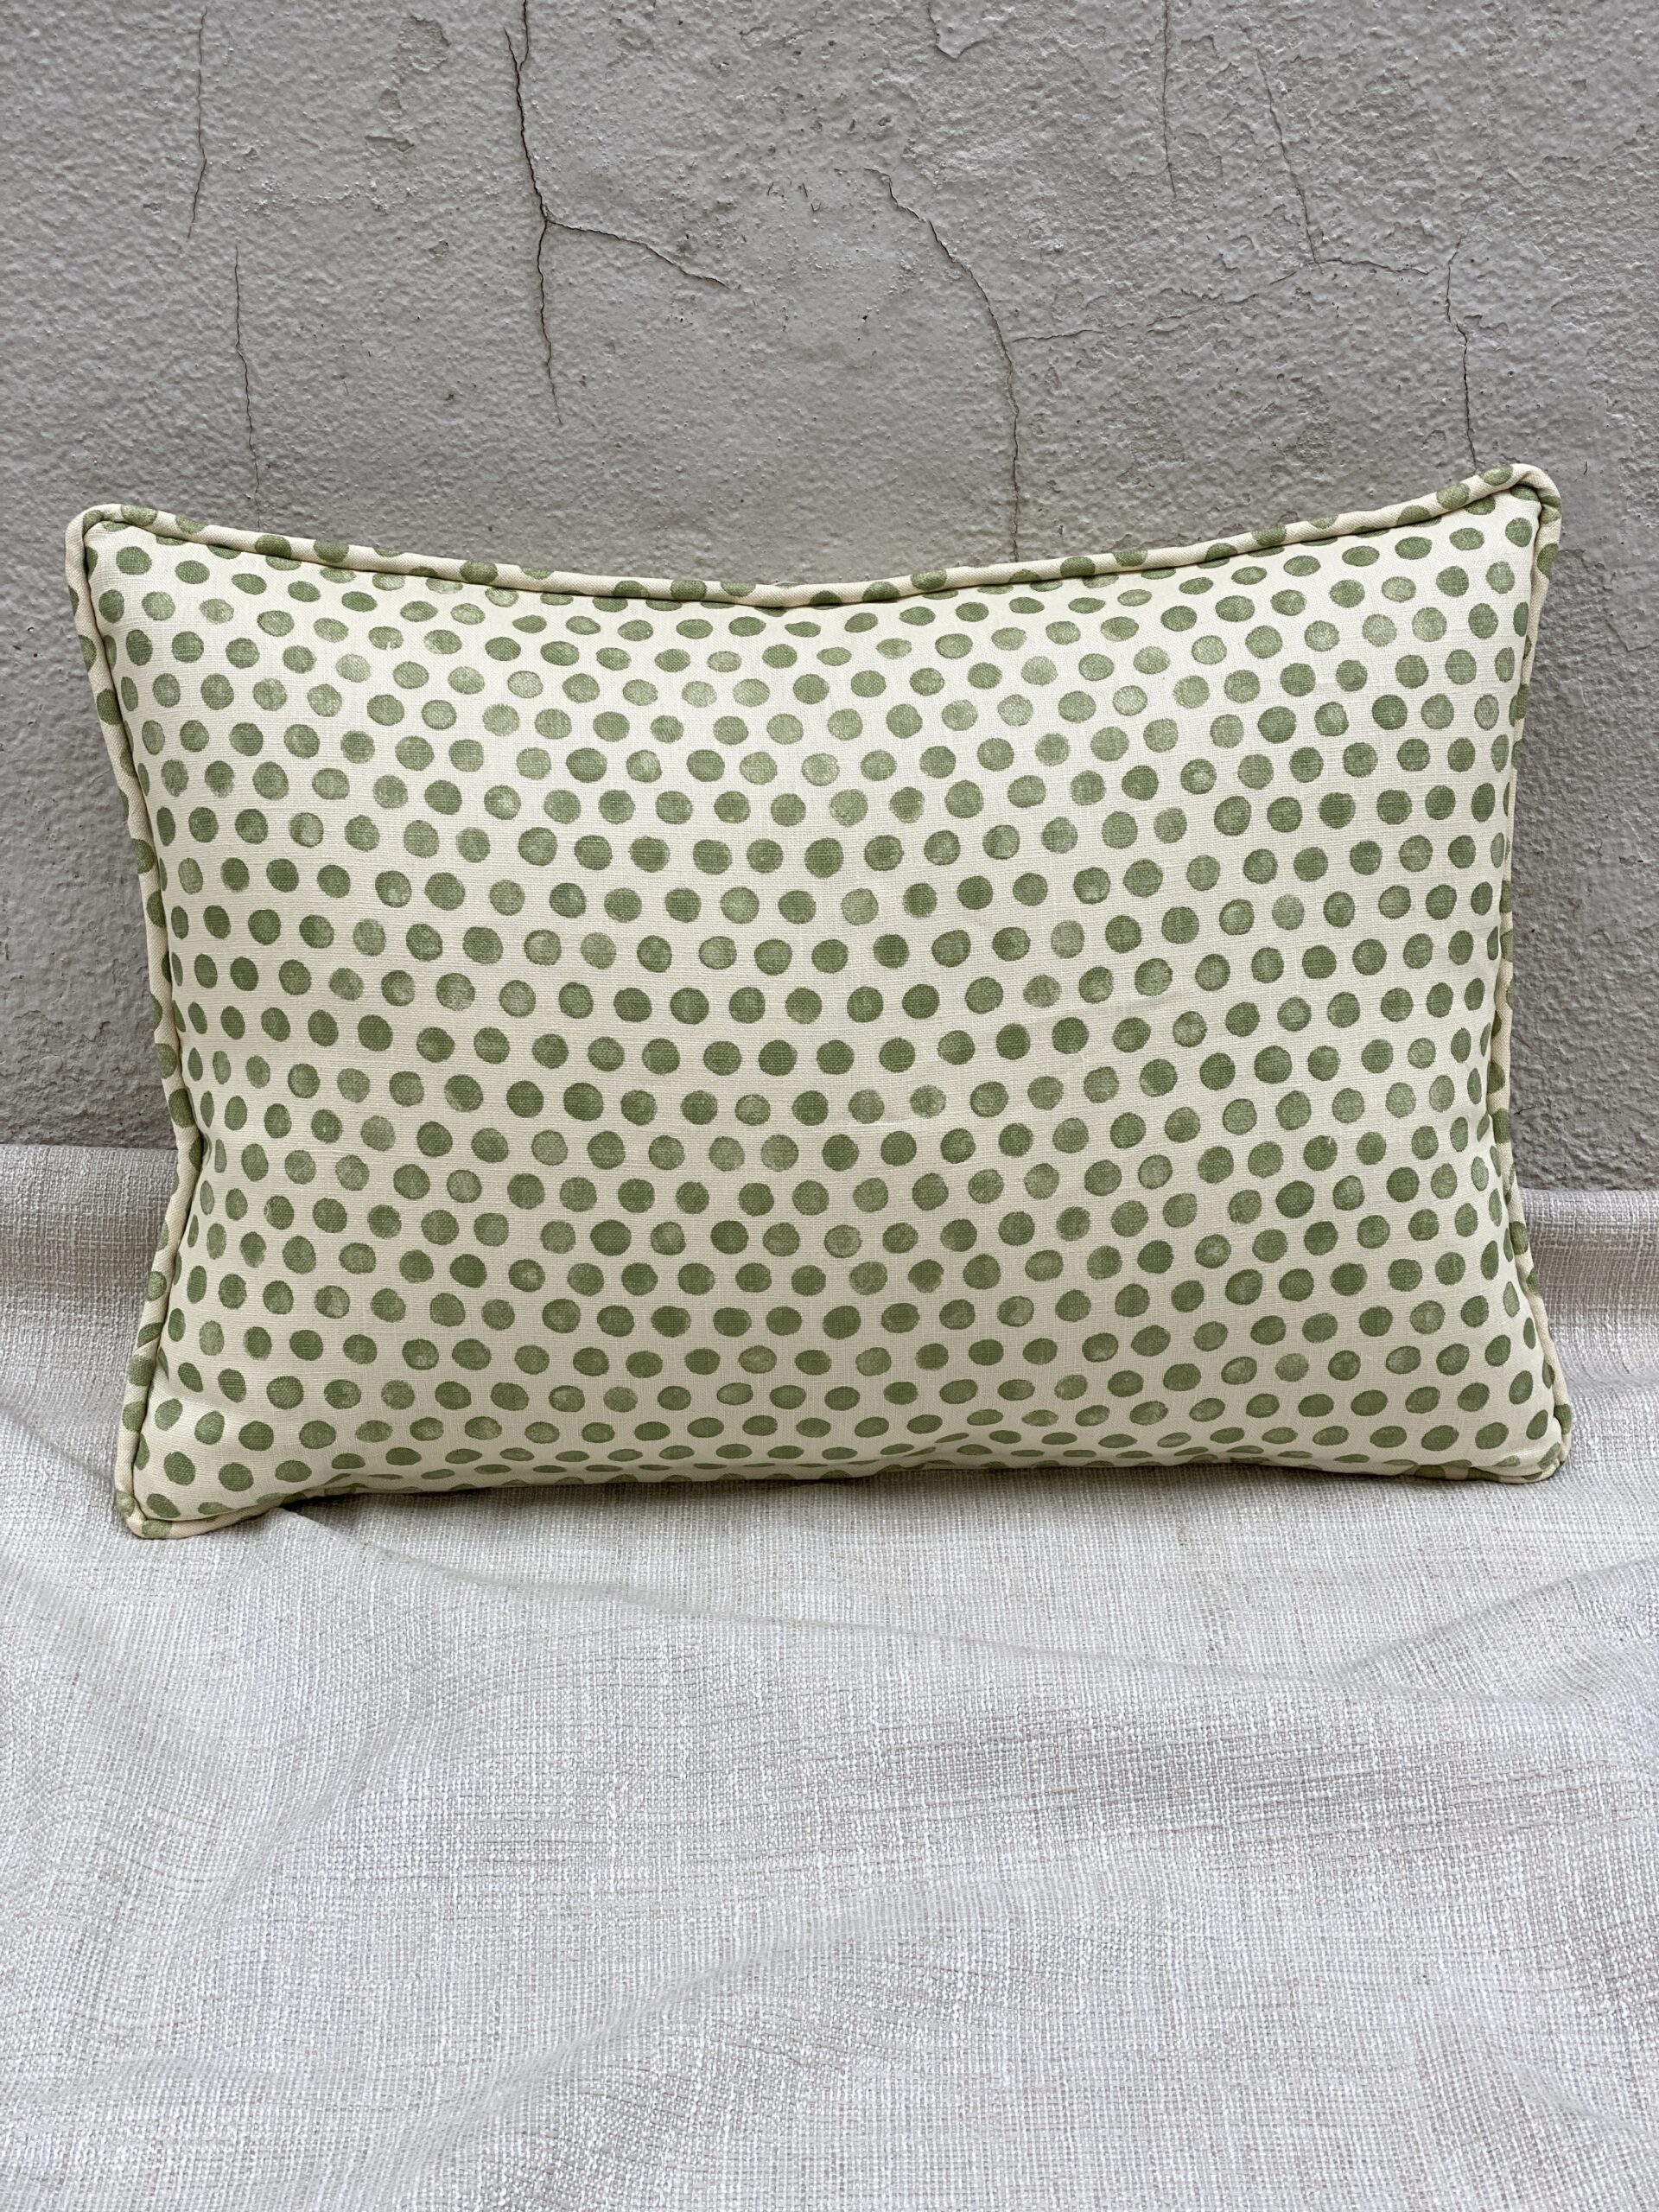 Lisa Fine Textiles Tika Pillows